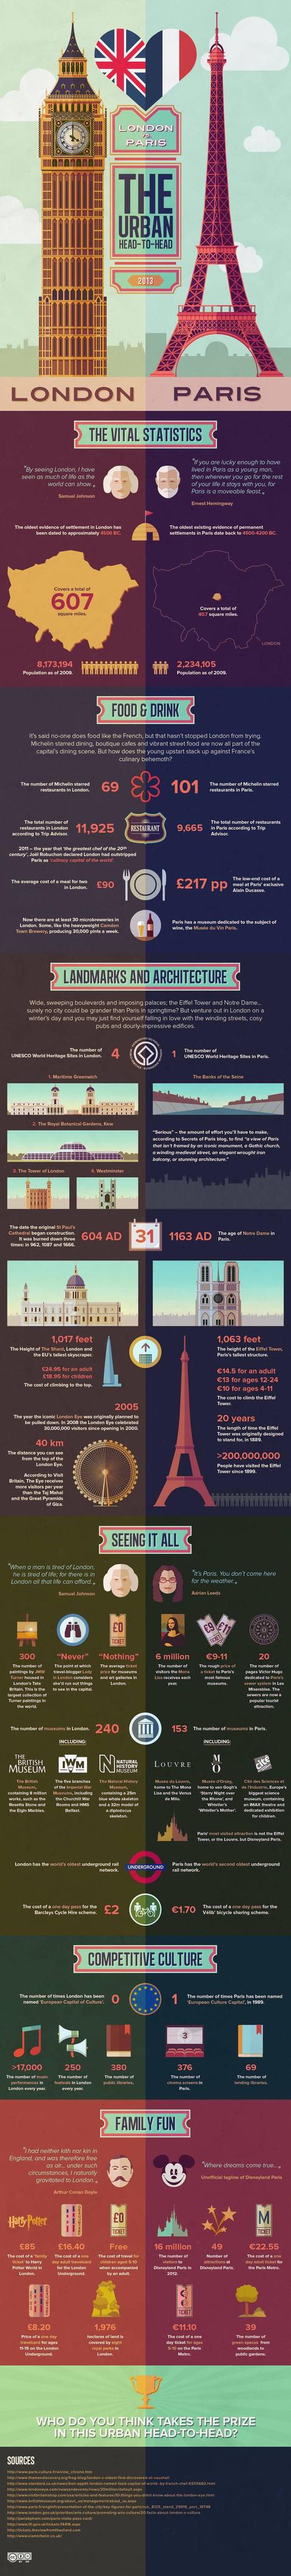 London vs Paris Infographic